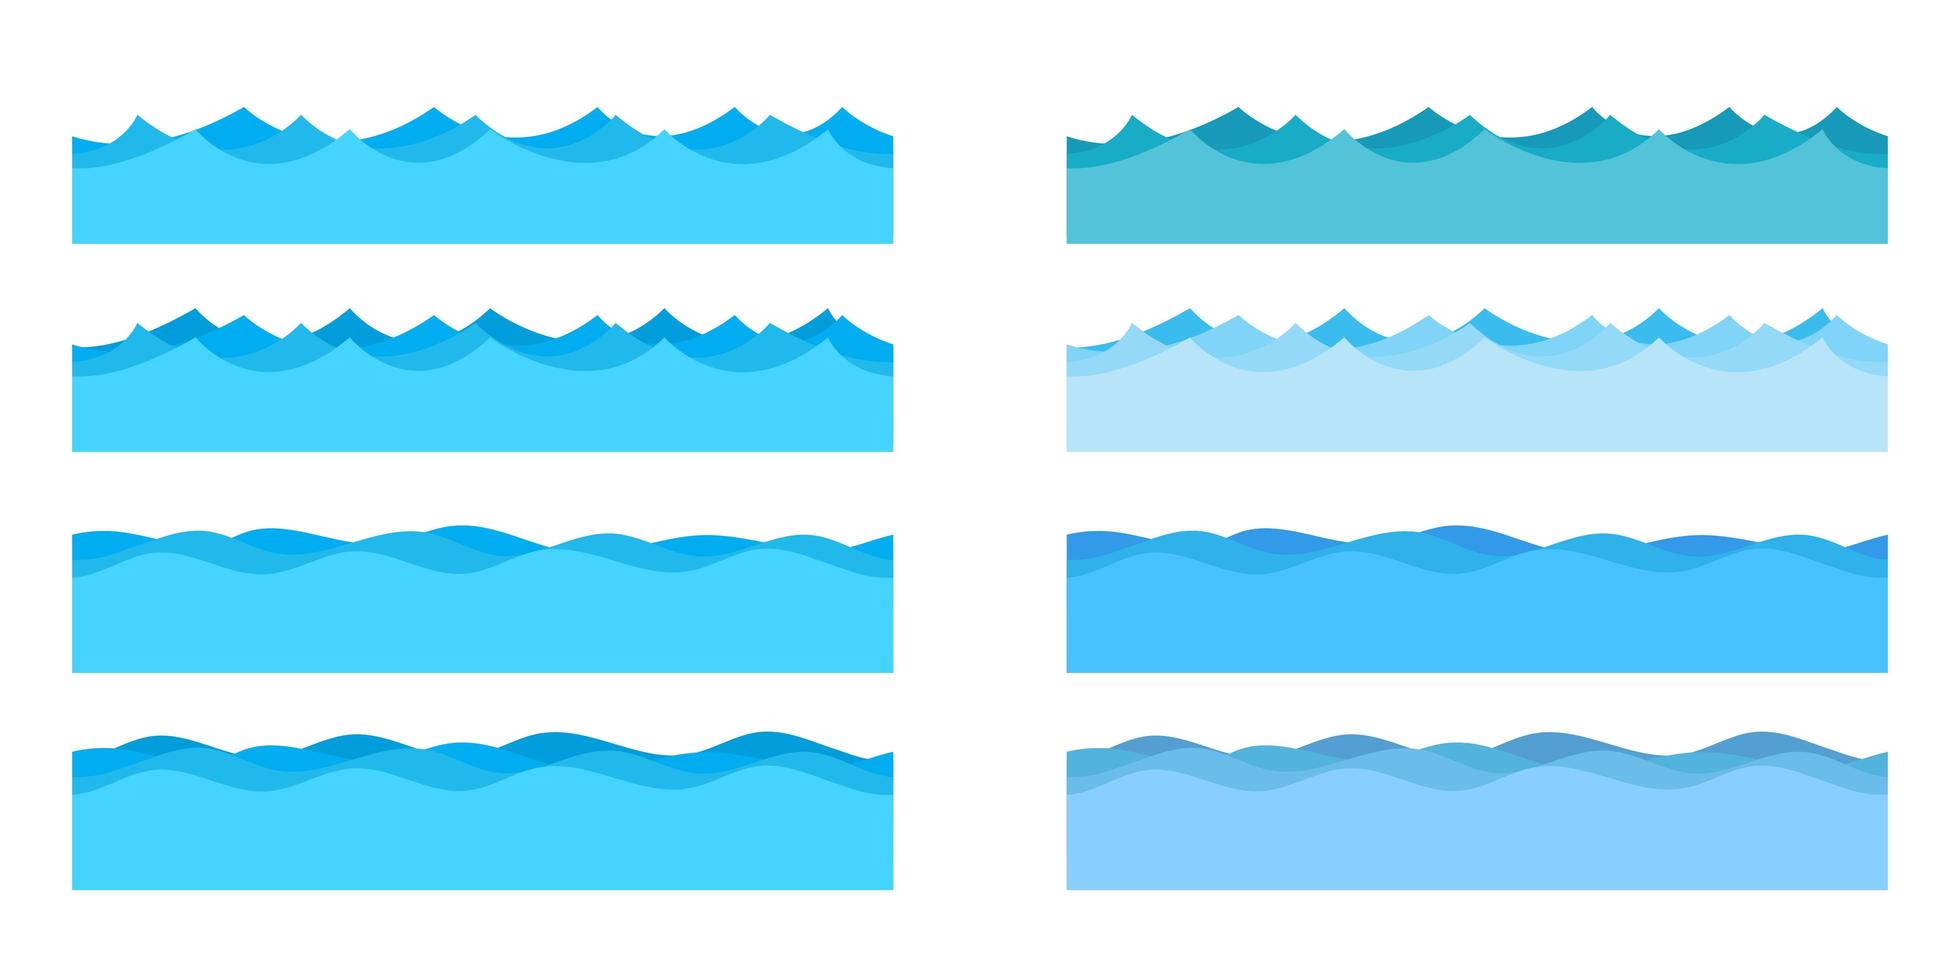 Ilustración de diseño de vector de olas de mar aislado sobre fondo blanco